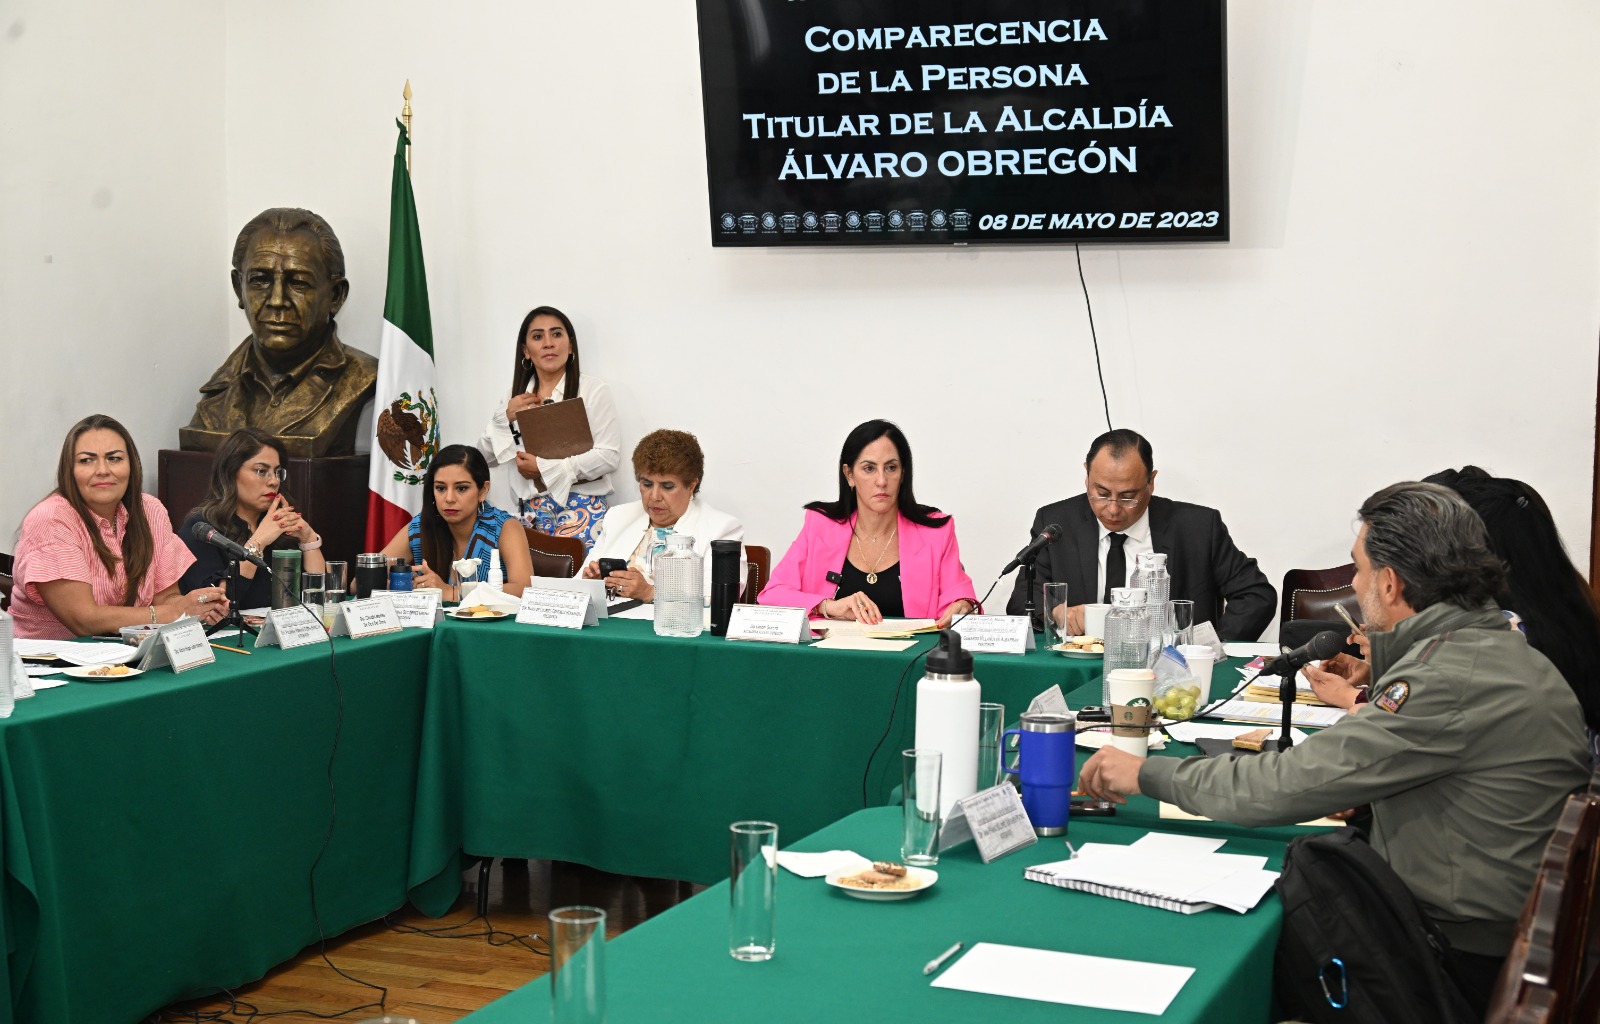 Con Álvaro Obregón inician comparecencias de alcaldías en Congreso CDMX